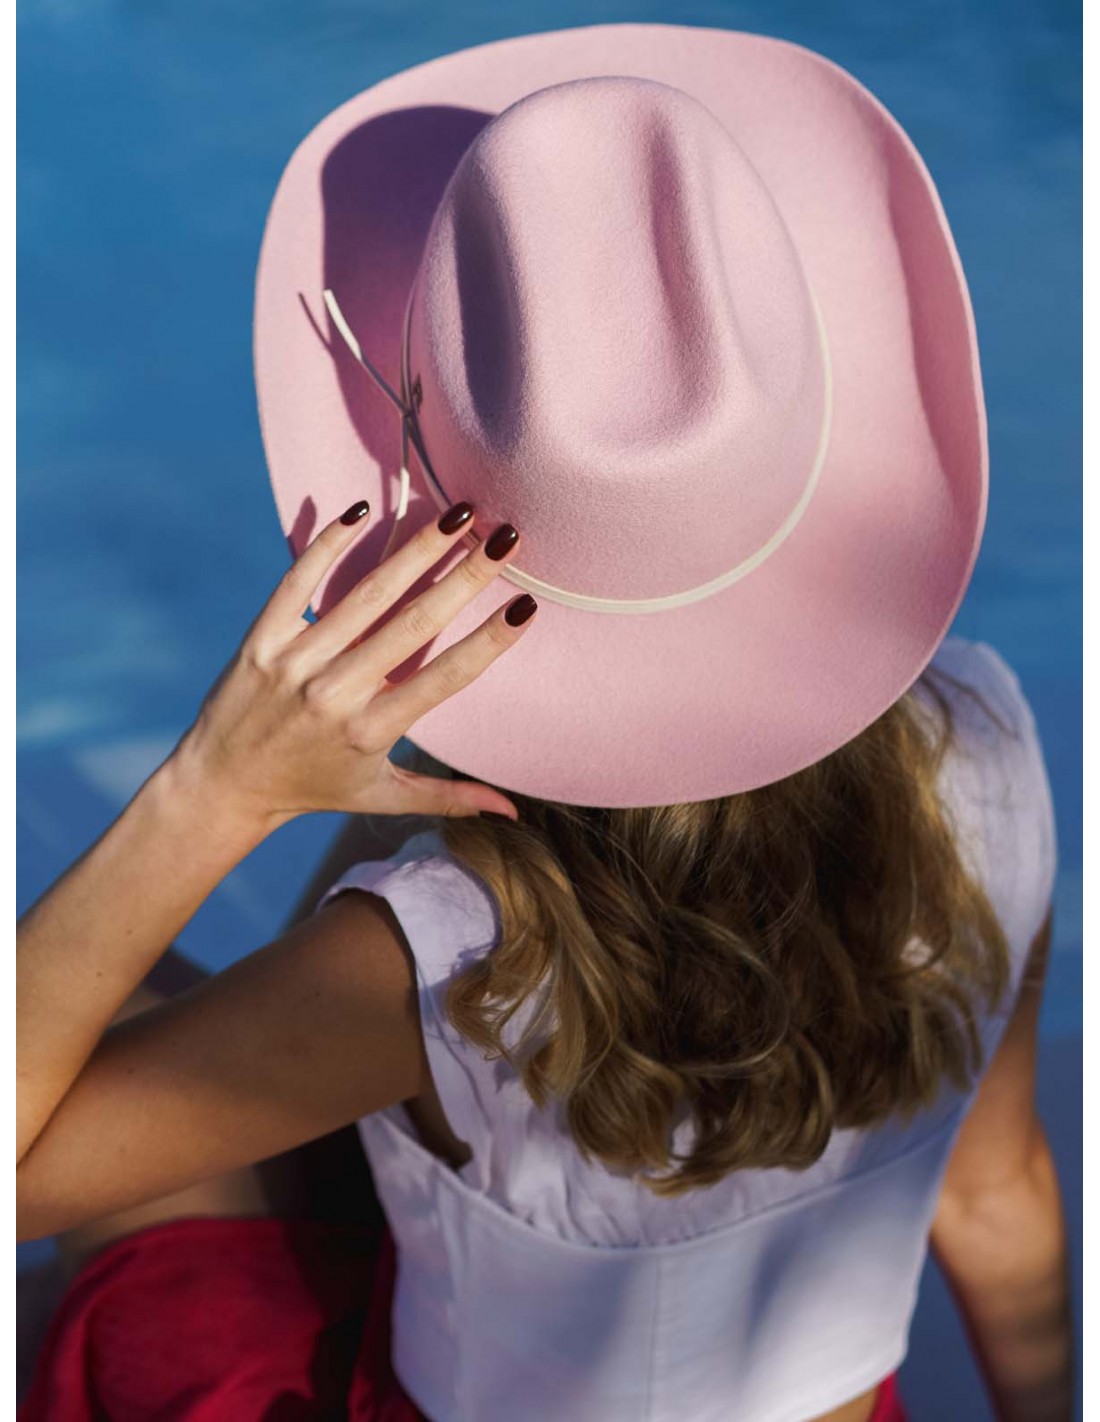 Cowboyhut aus Wollfilz für Frauen rosa kaufen - Raceu Hats